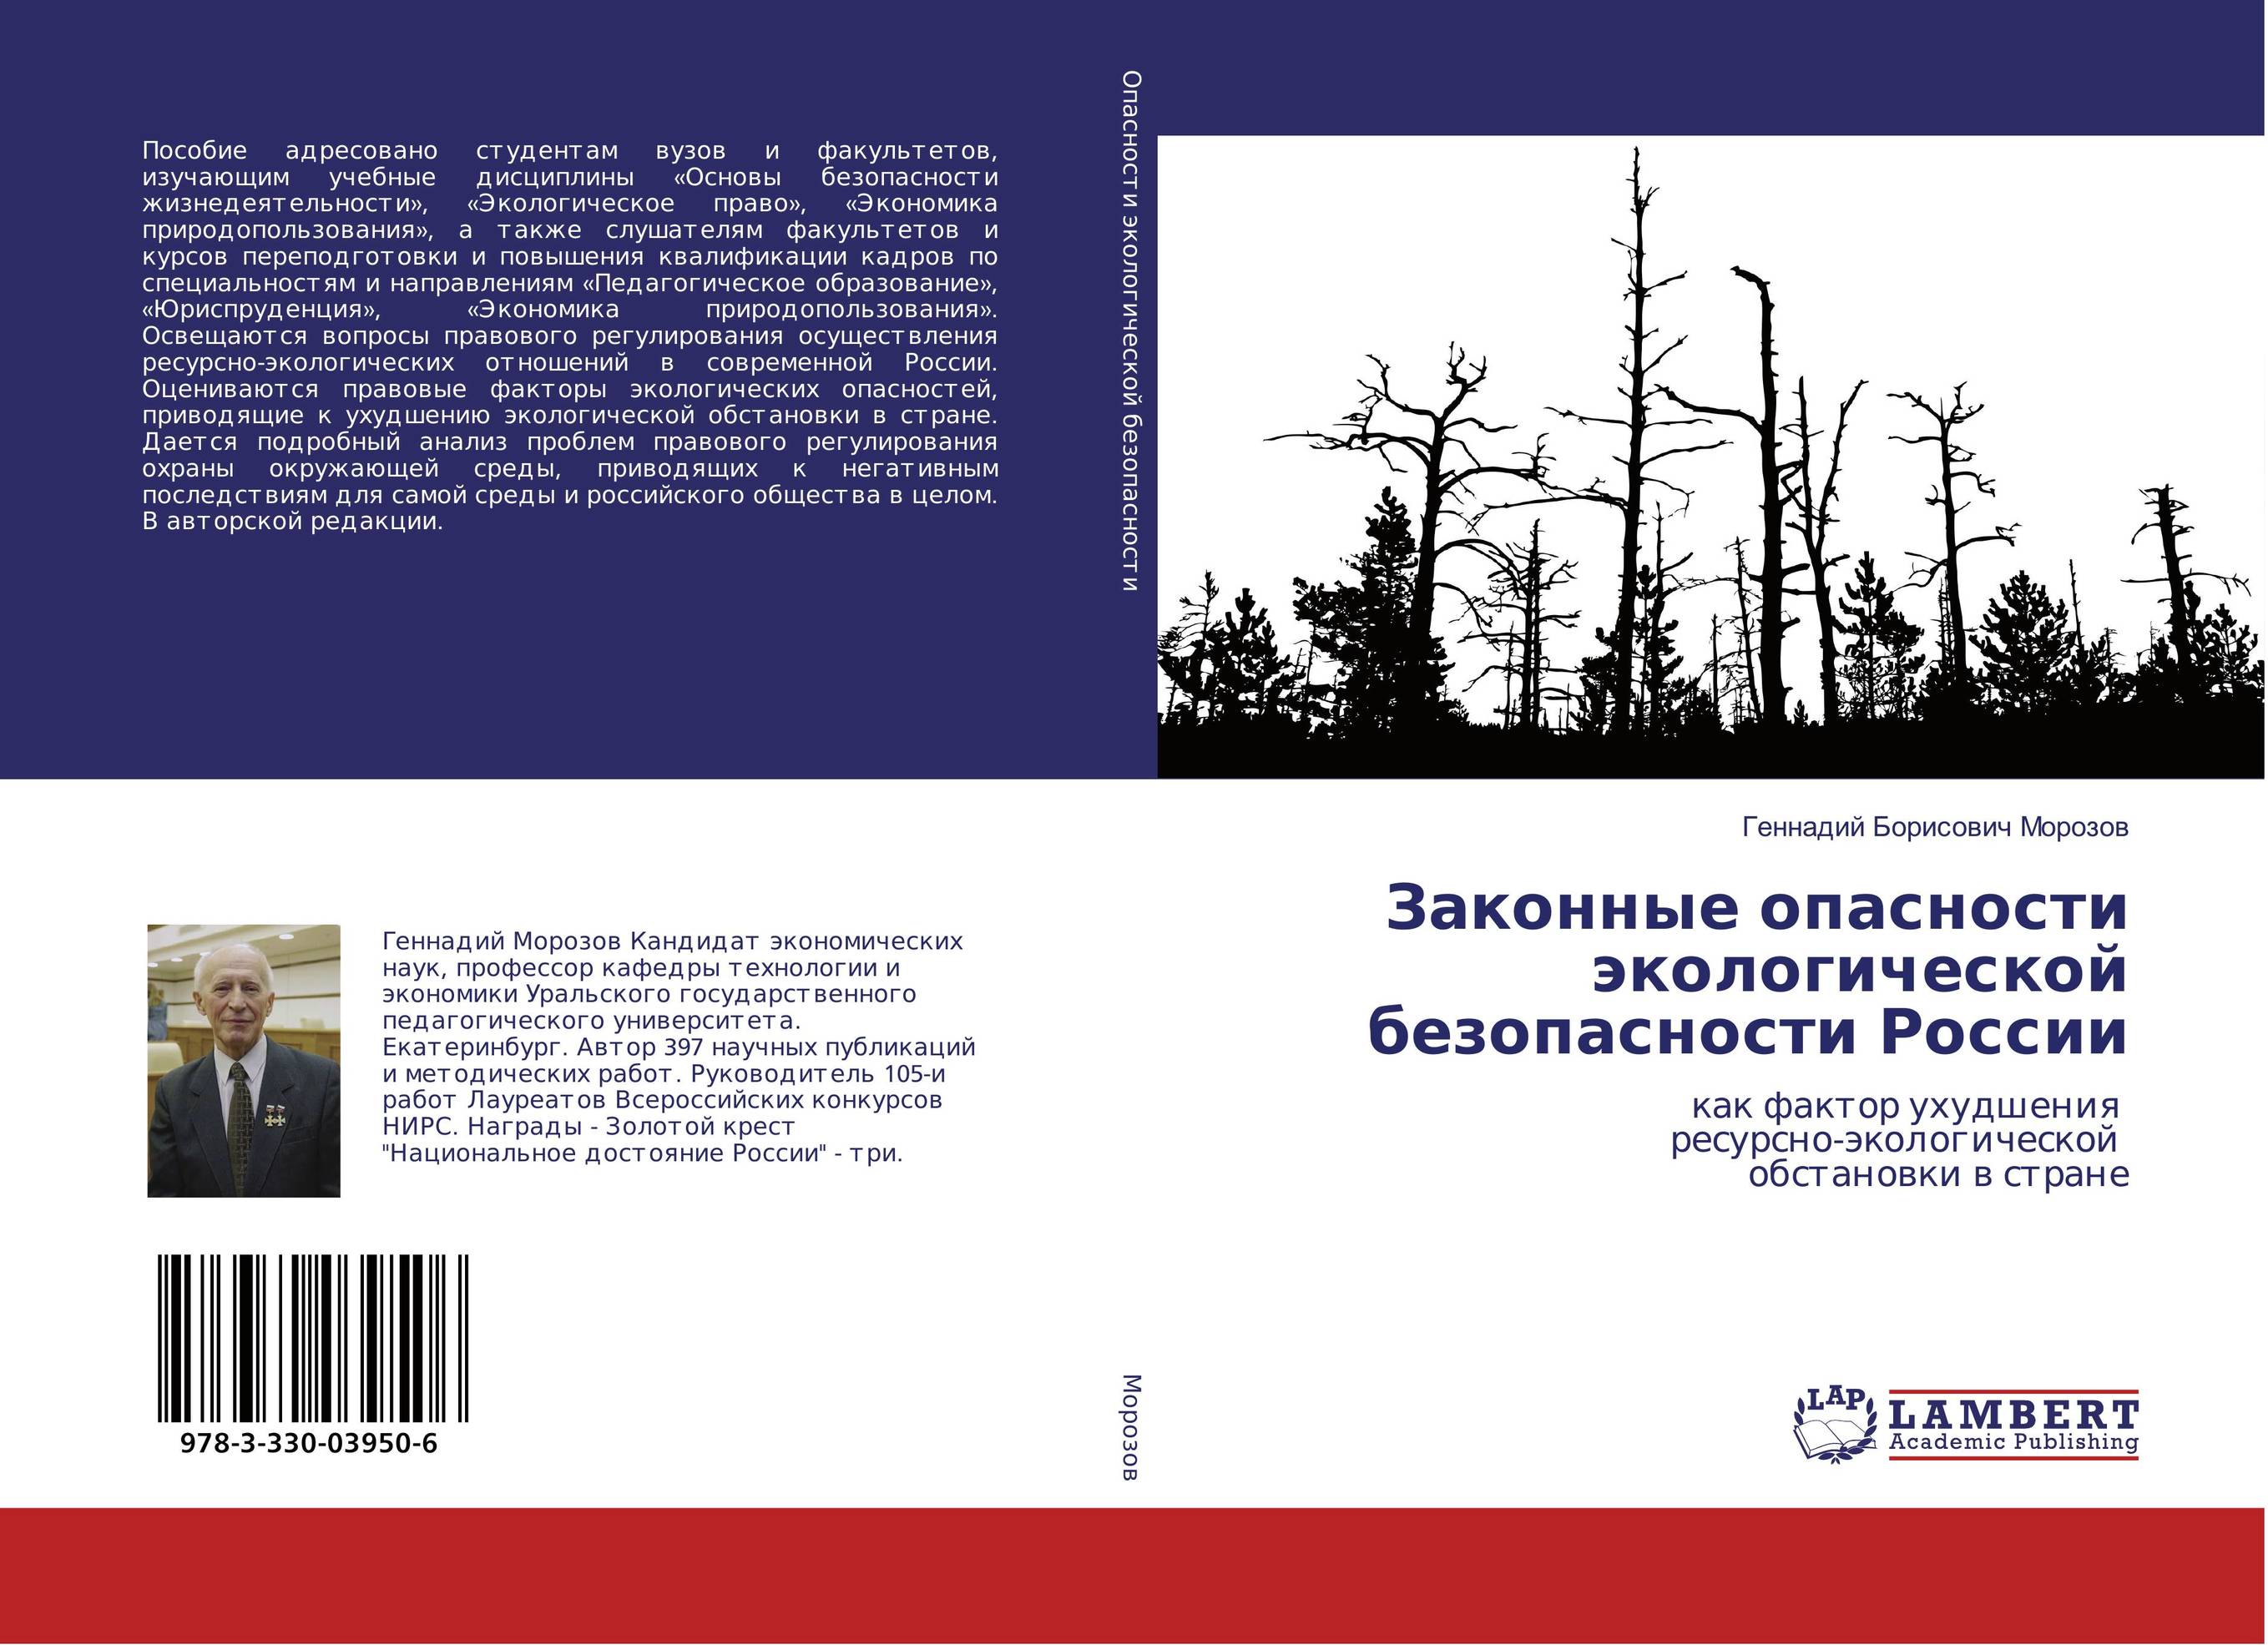 
        Законные опасности экологической безопасности России. Как фактор ухудшения ресурсно-экологической обстановки в стране.
      